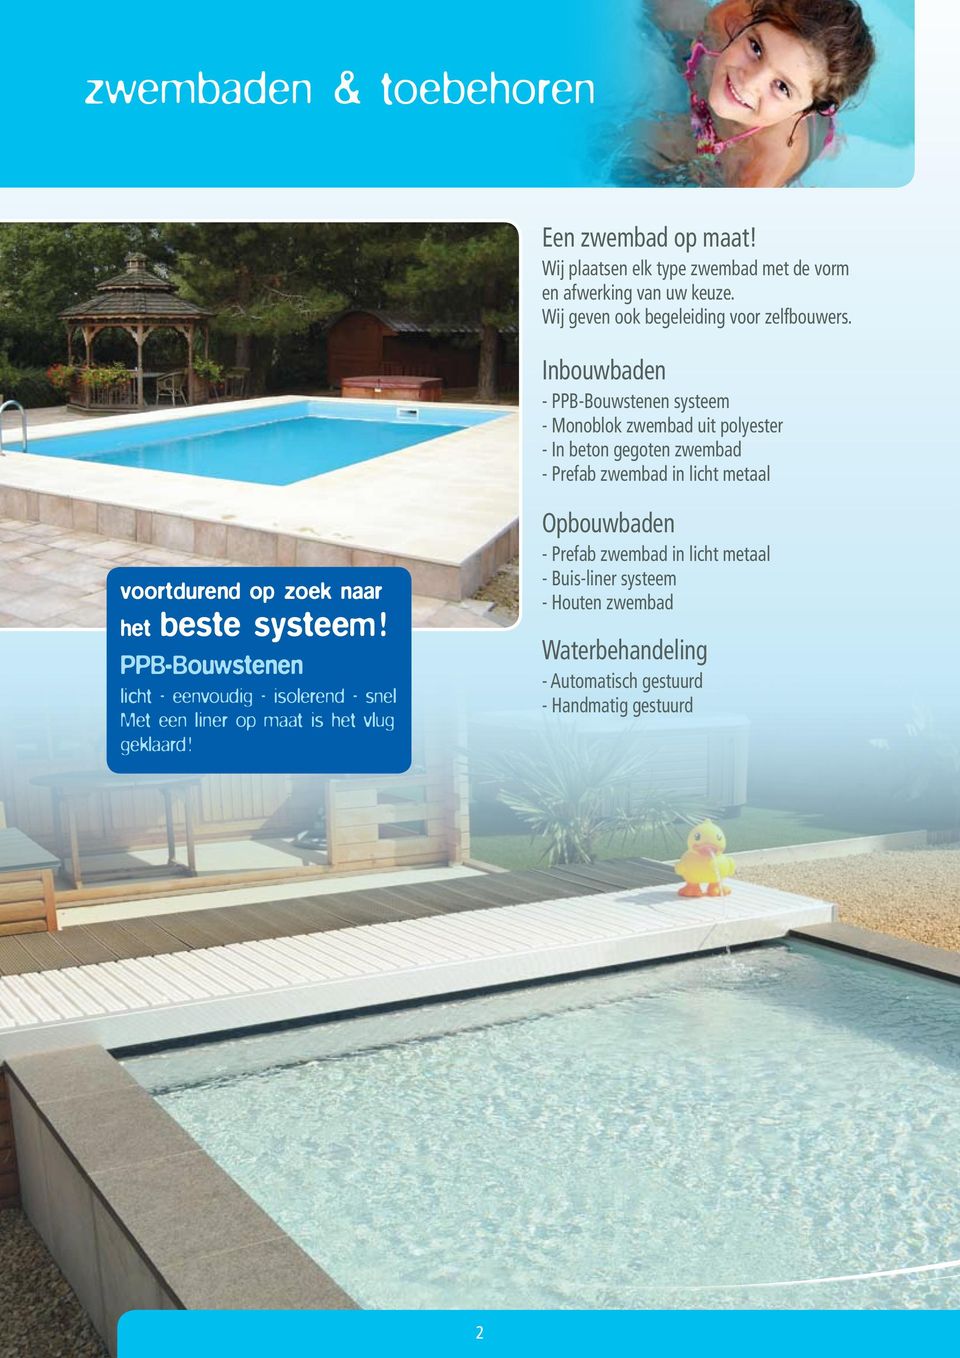 Inbouwbaden - PPB-Bouwstenen systeem - Monoblok zwembad uit polyester - In beton gegoten zwembad - Prefab zwembad in licht metaal voortdurend